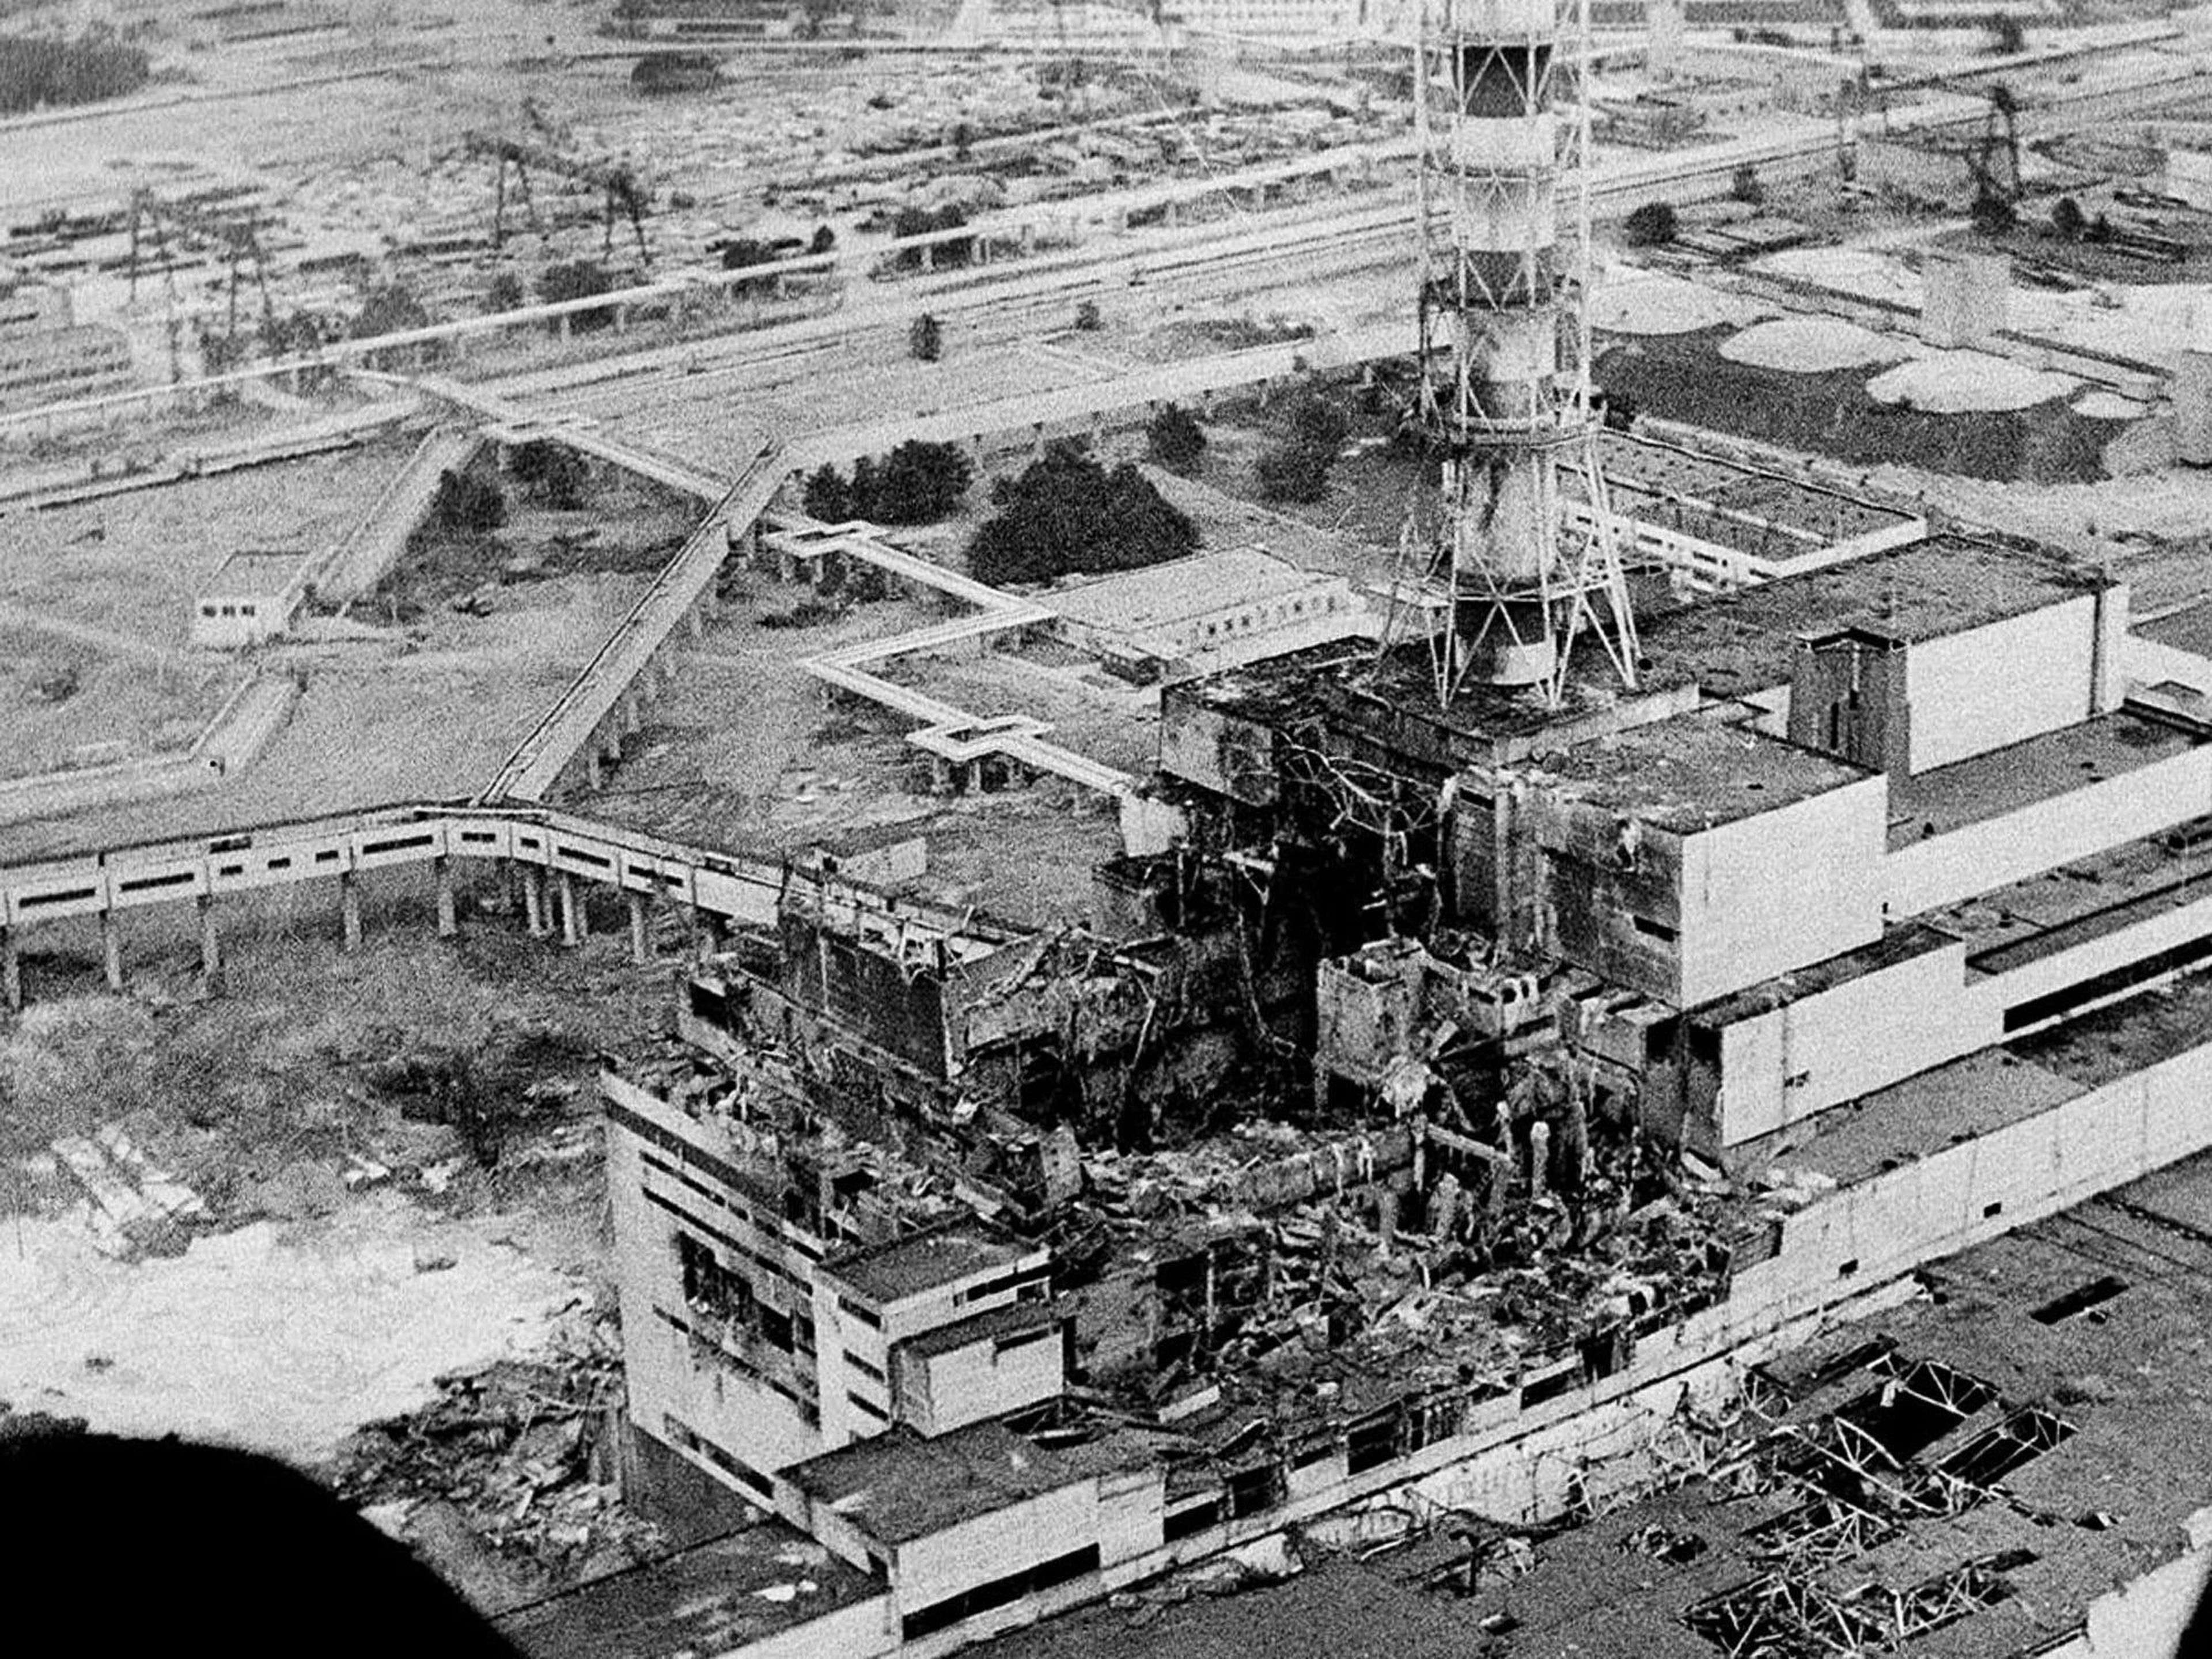 La central nuclear de Chernobyl en abril de 1986, fotografiada pocos días después de la explosión.